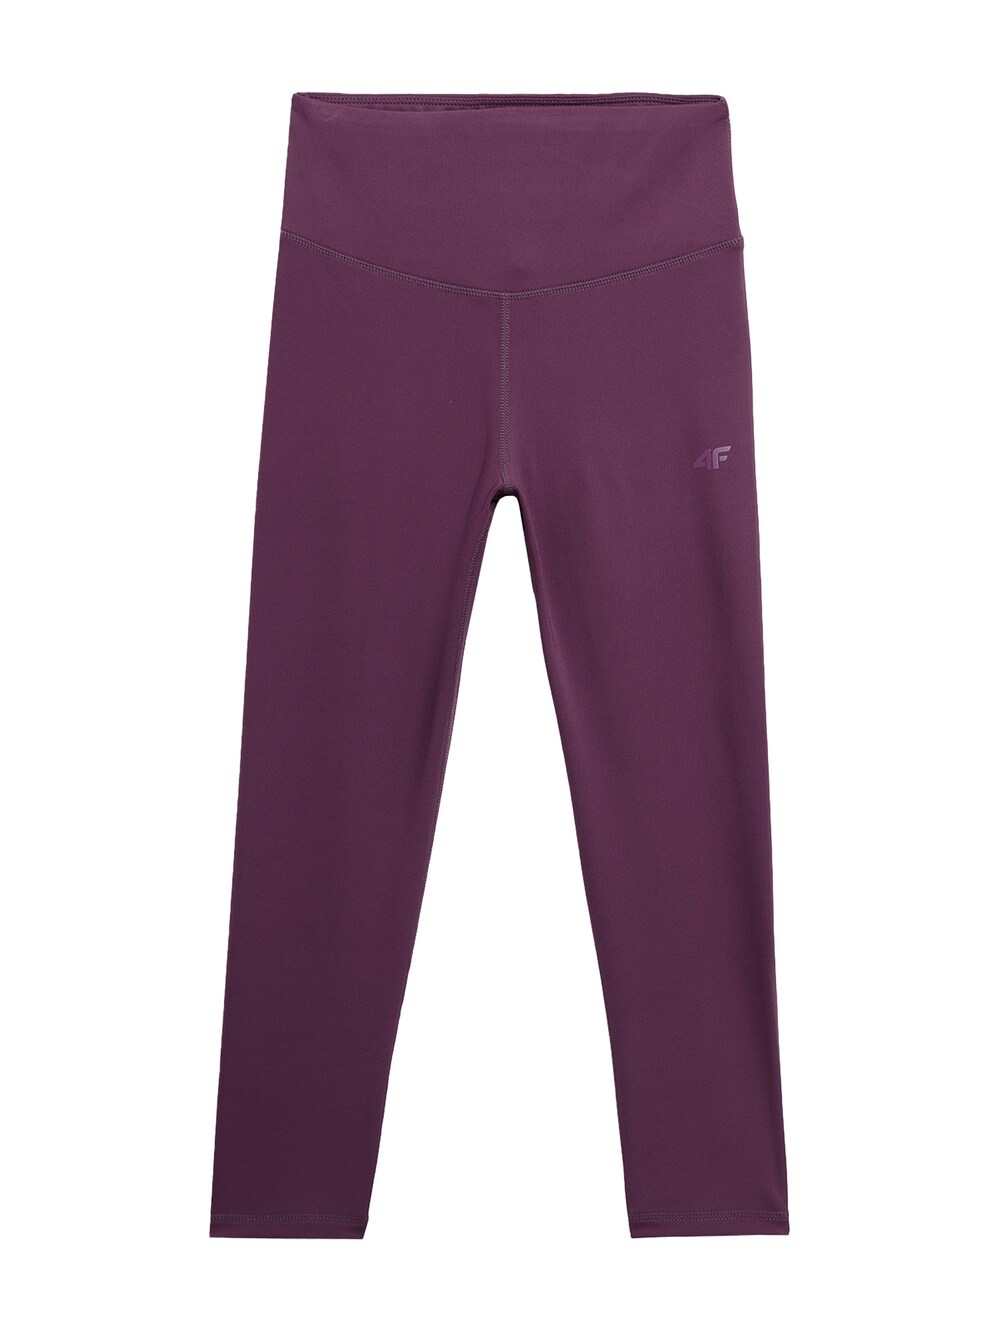 Узкие тренировочные брюки 4F, фиолетовый